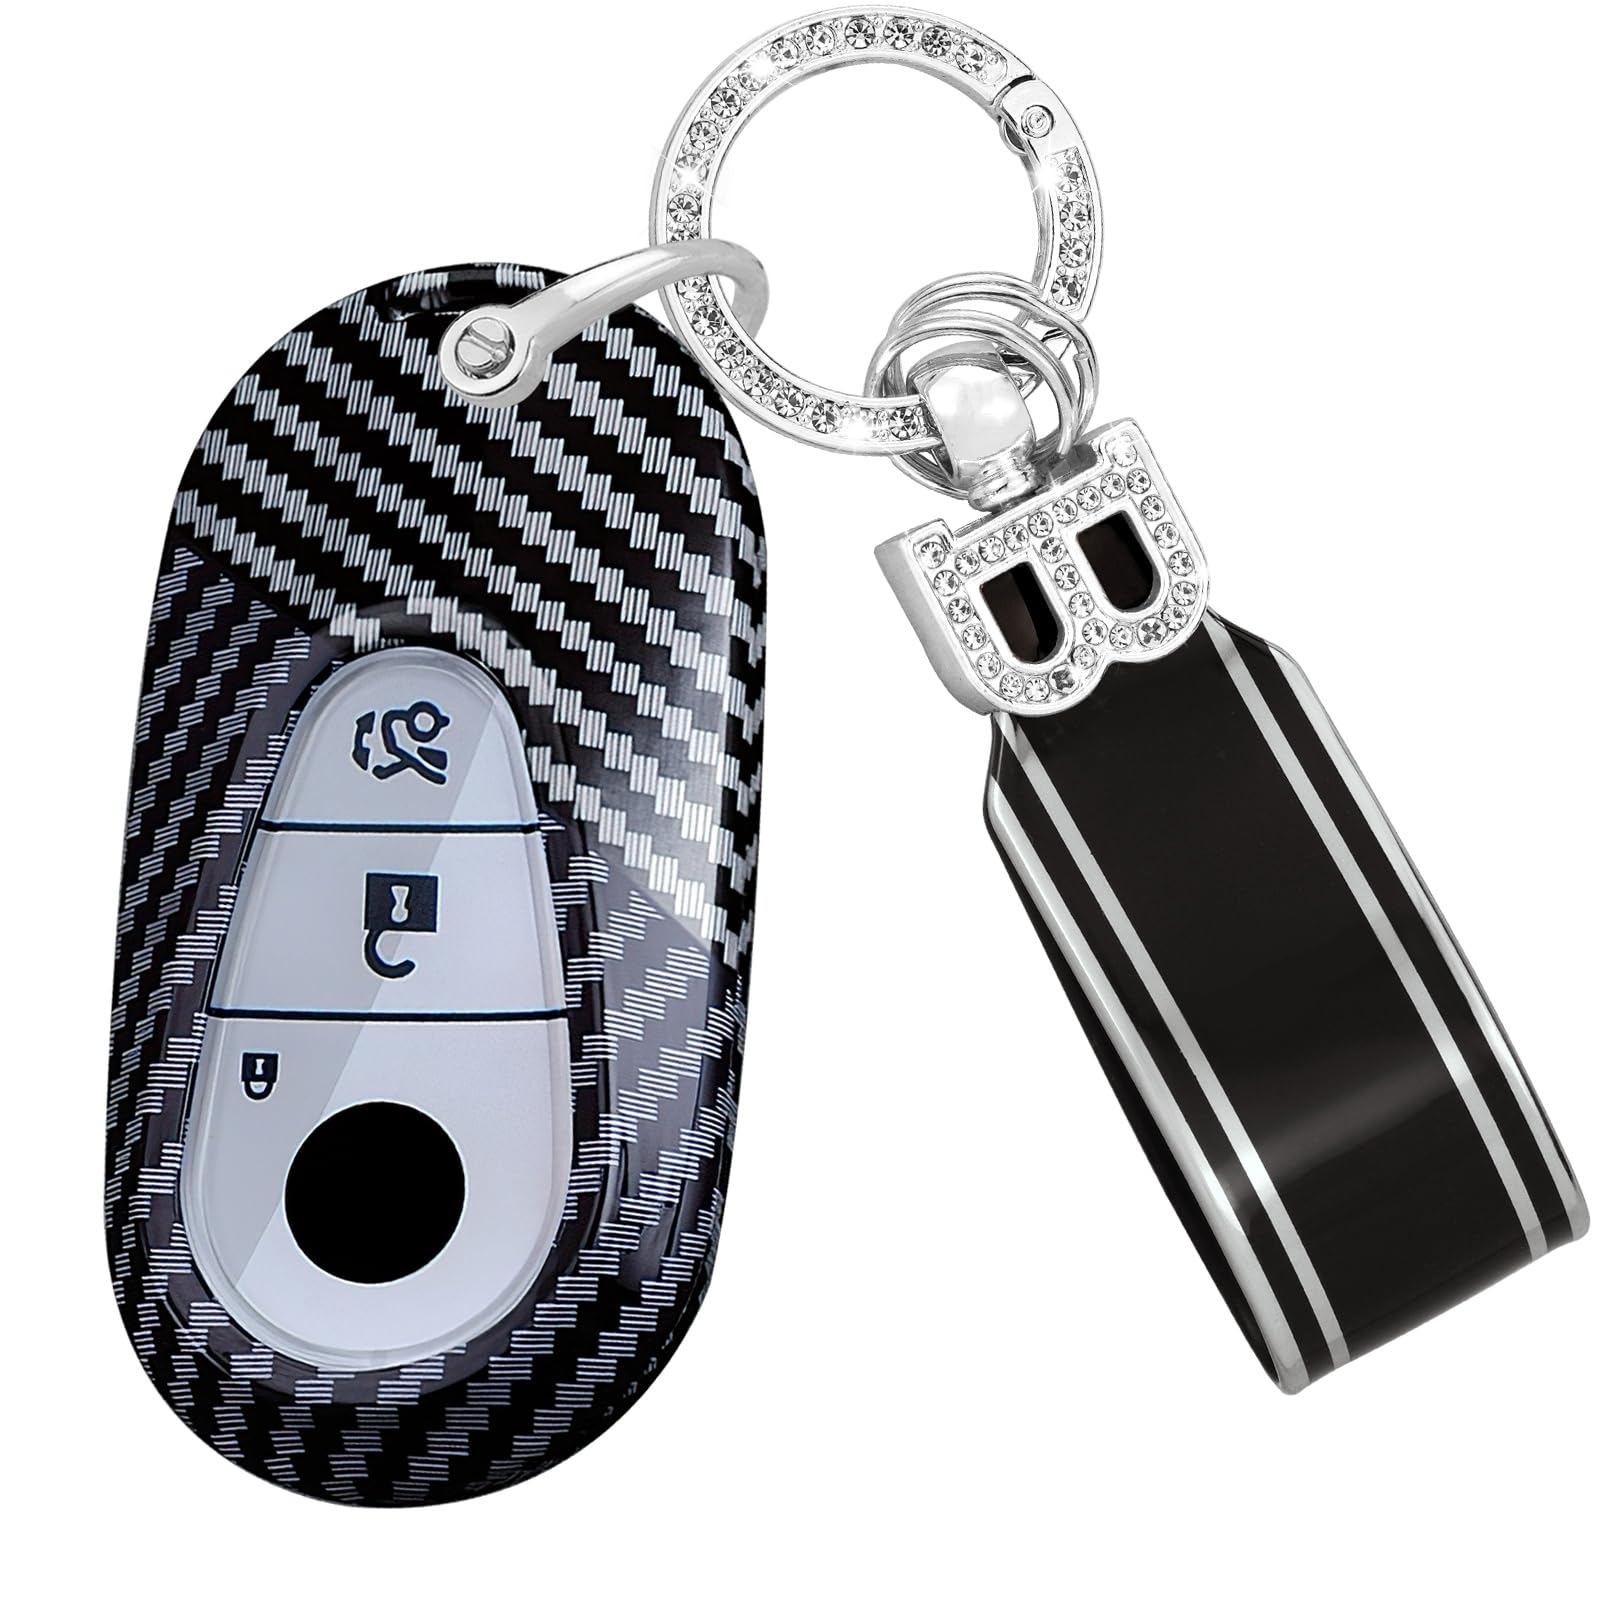 TECART Fernsteuerung Schlüsselhülle Schlüsselschutz Passt für Mercedes Benz S W223 S300 S350 S400 S450 S500 C200 C260 W206 Schlüsseltasche PC Schutzhülle Schlüsselanhänger 3 Tasten A-Schwarz Weiß von TECART